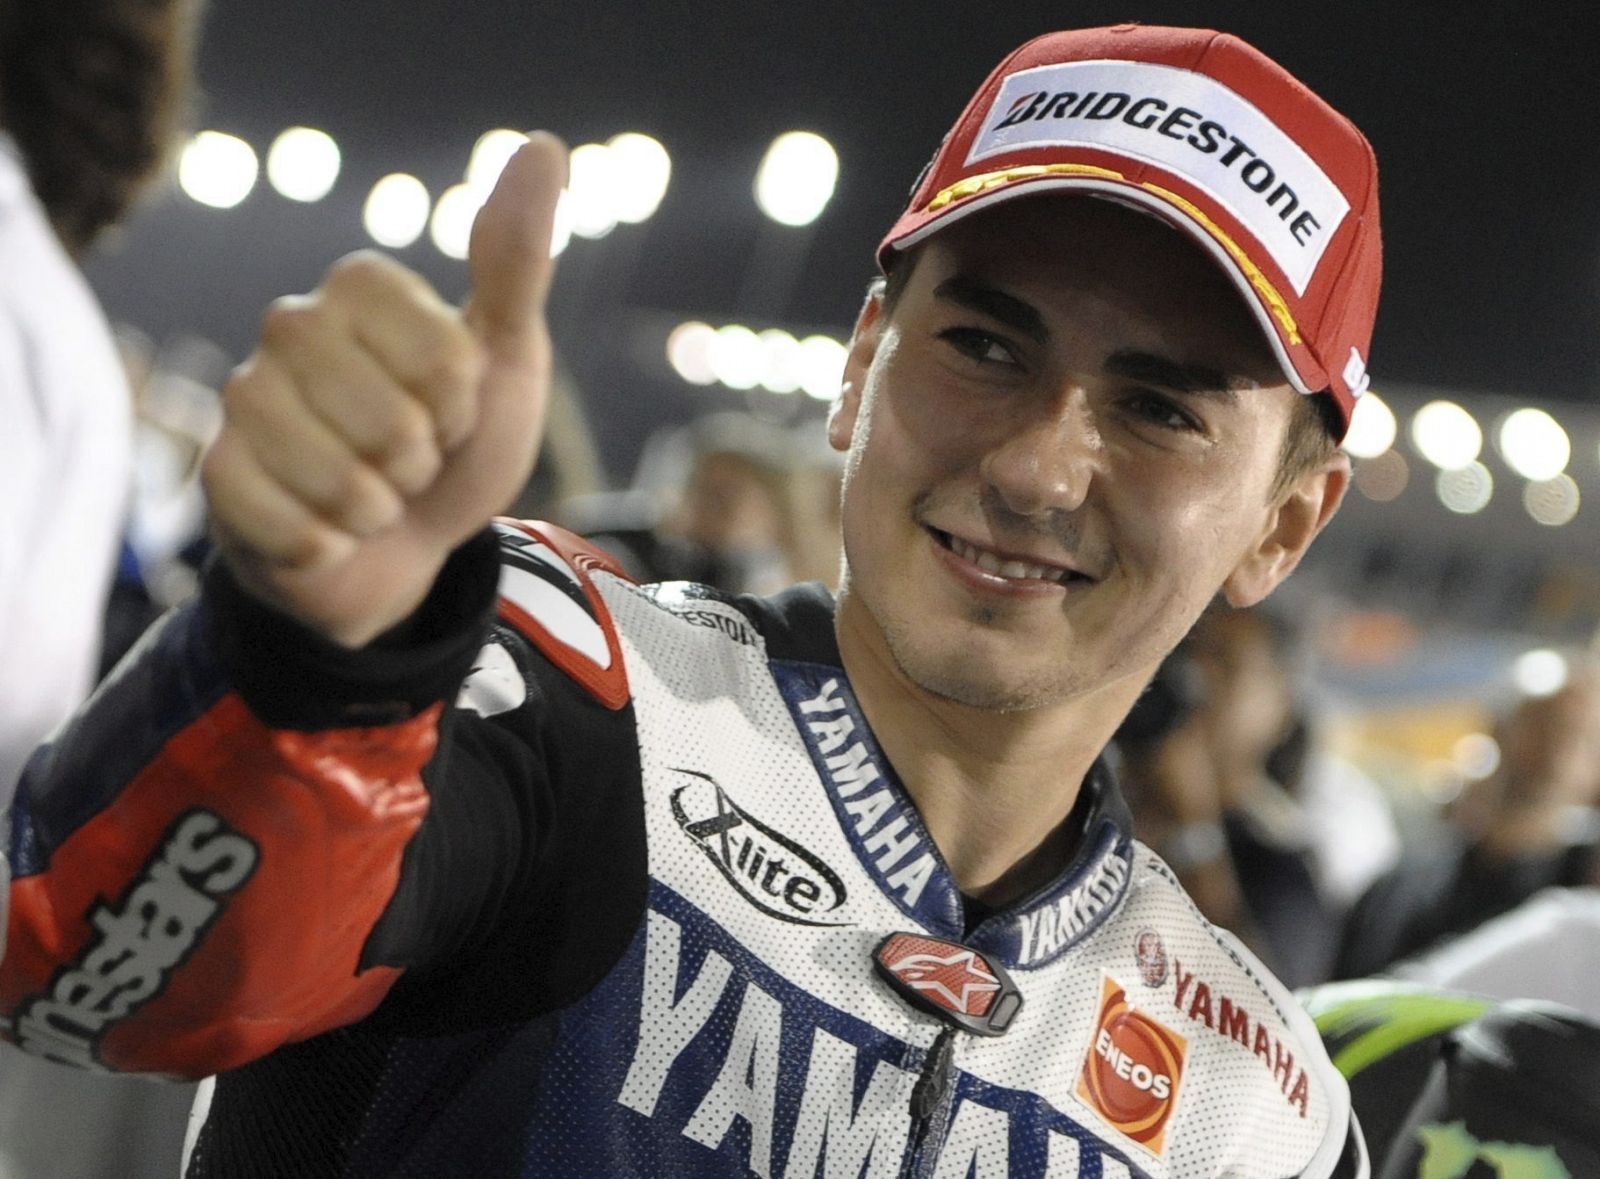 El piloto español Jorge Lorenzo sonríe después de lograr la "pole" en los entrenamientos clasificatorios del Gran Premio de motociclismo de Catar